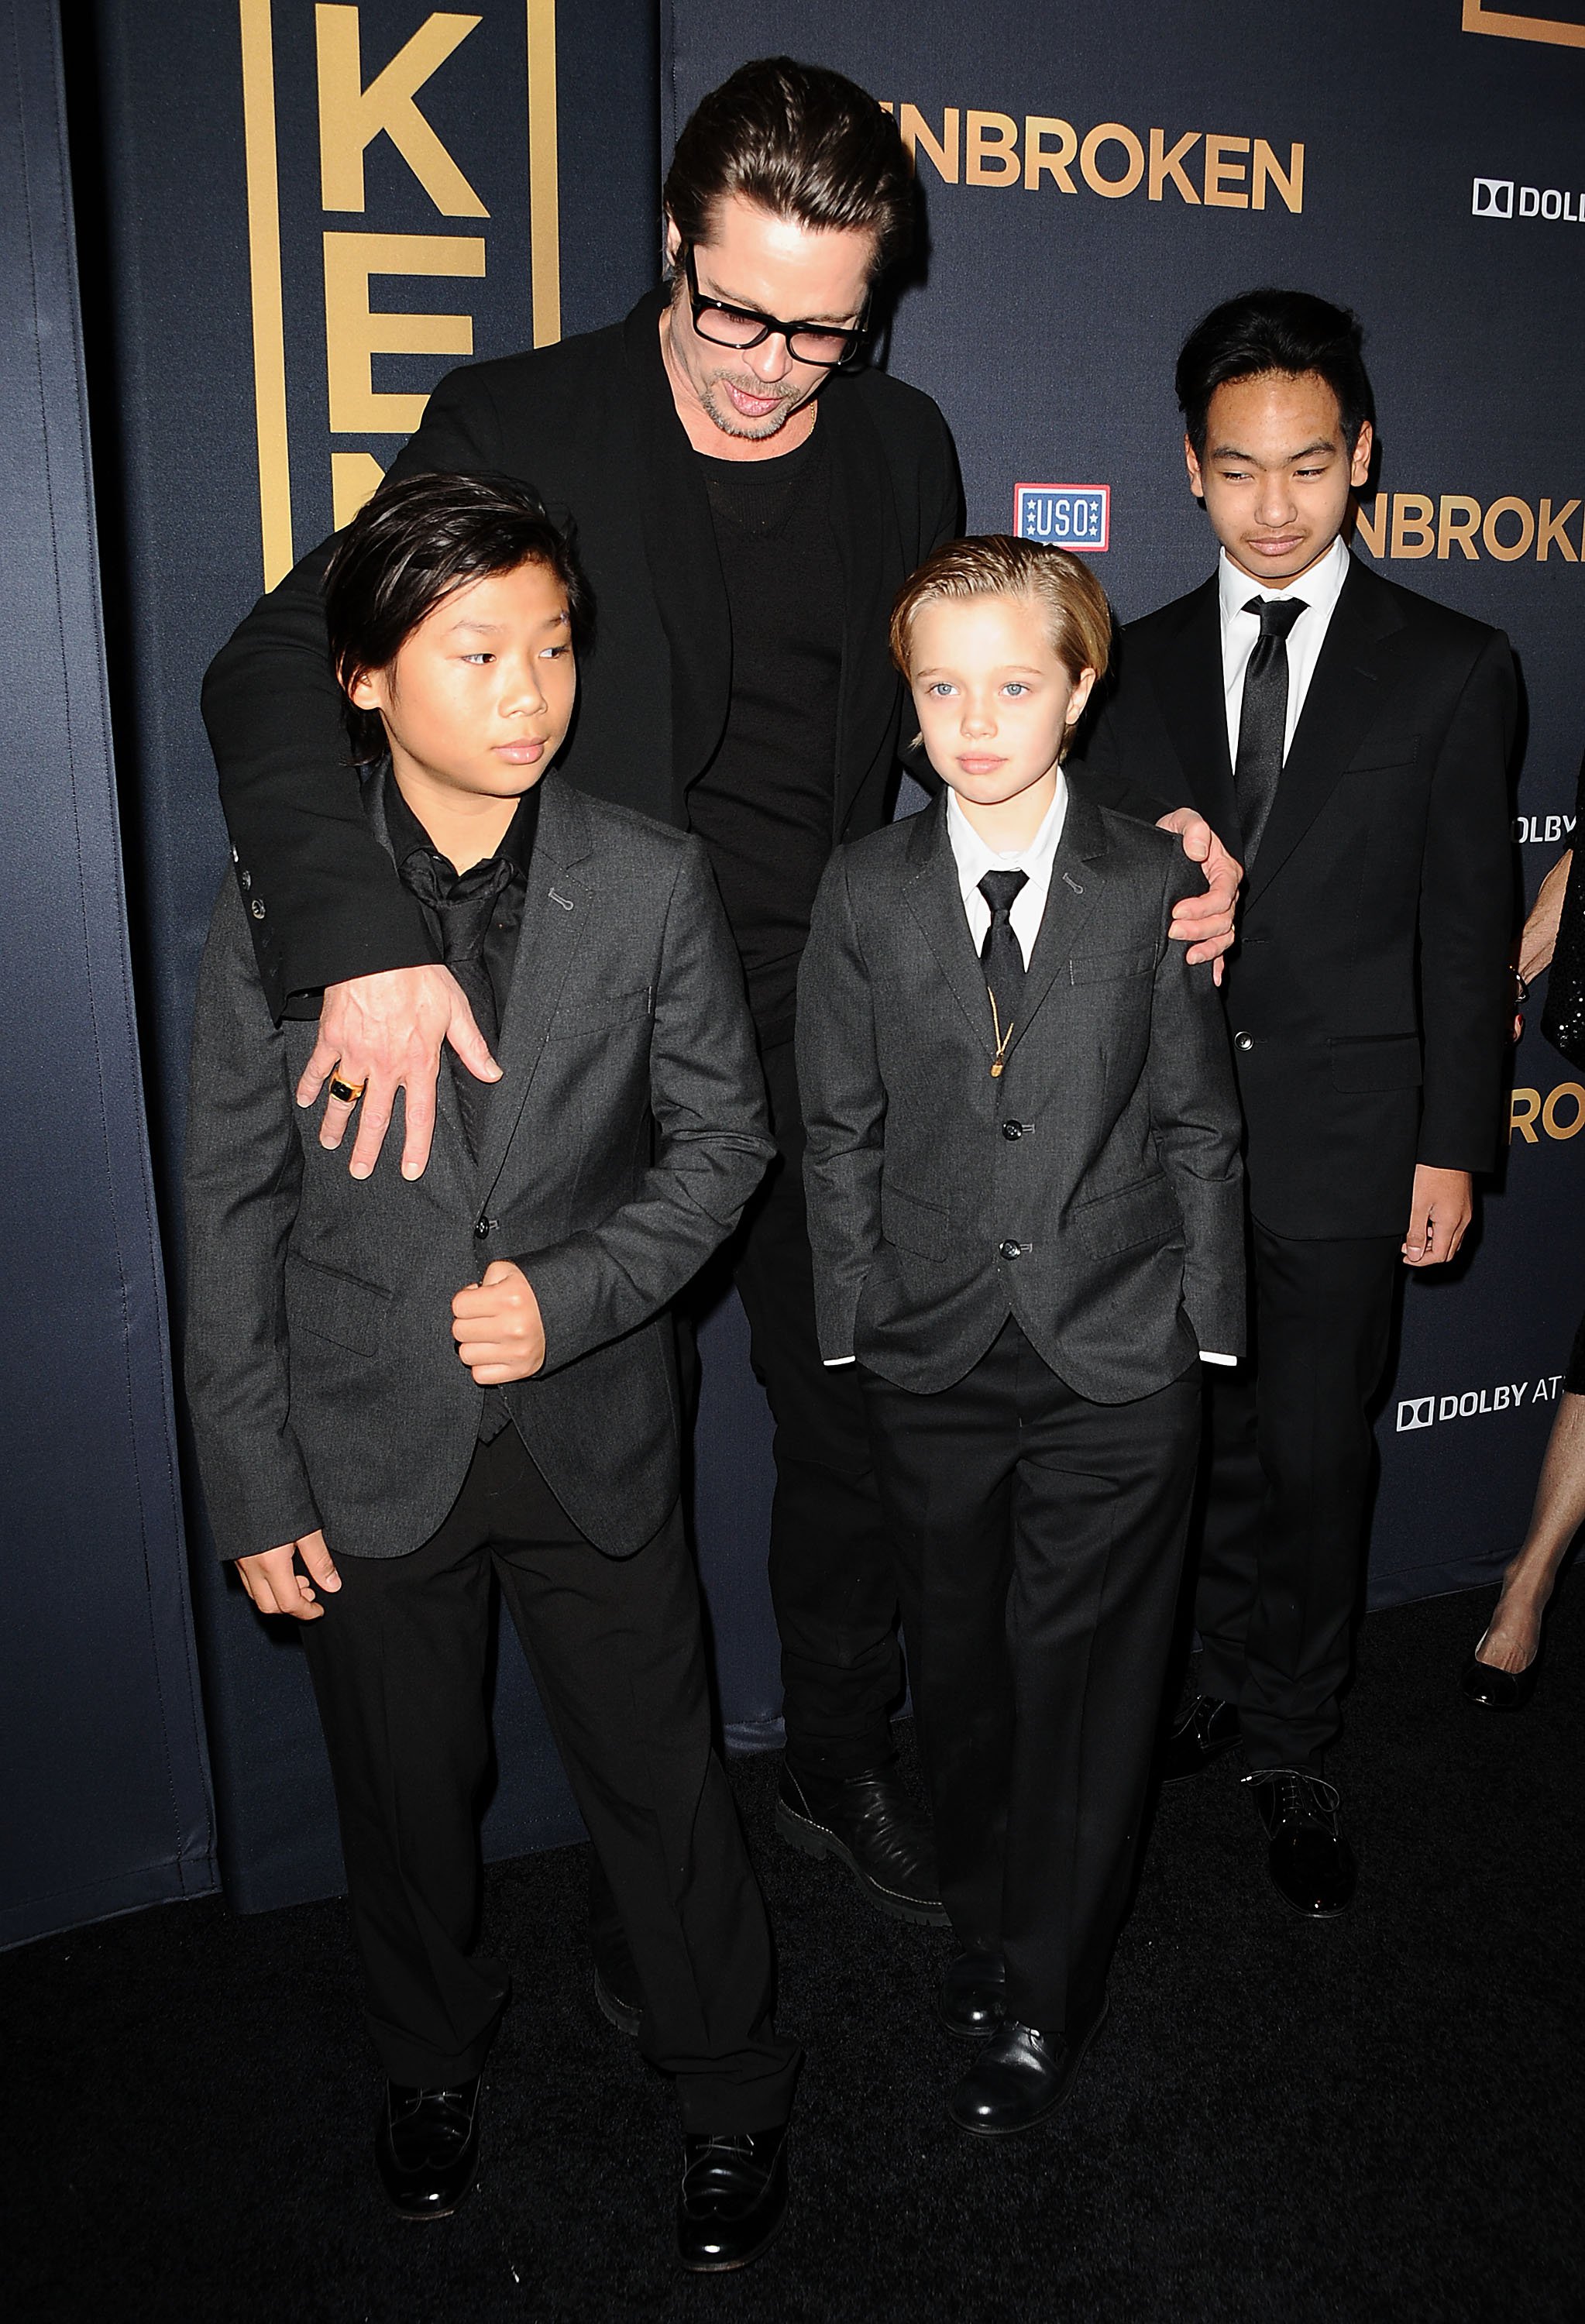 L'acteur Brad Pitt, Pax Thien Jolie-Pitt, Shiloh Nouvel Jolie-Pitt et Maddox Jolie-Pitt à la première de "Unbroken" au TCL Chinese Theatre IMAX le 15 décembre 2014 à Hollywood, Californie. | Source : Getty Images